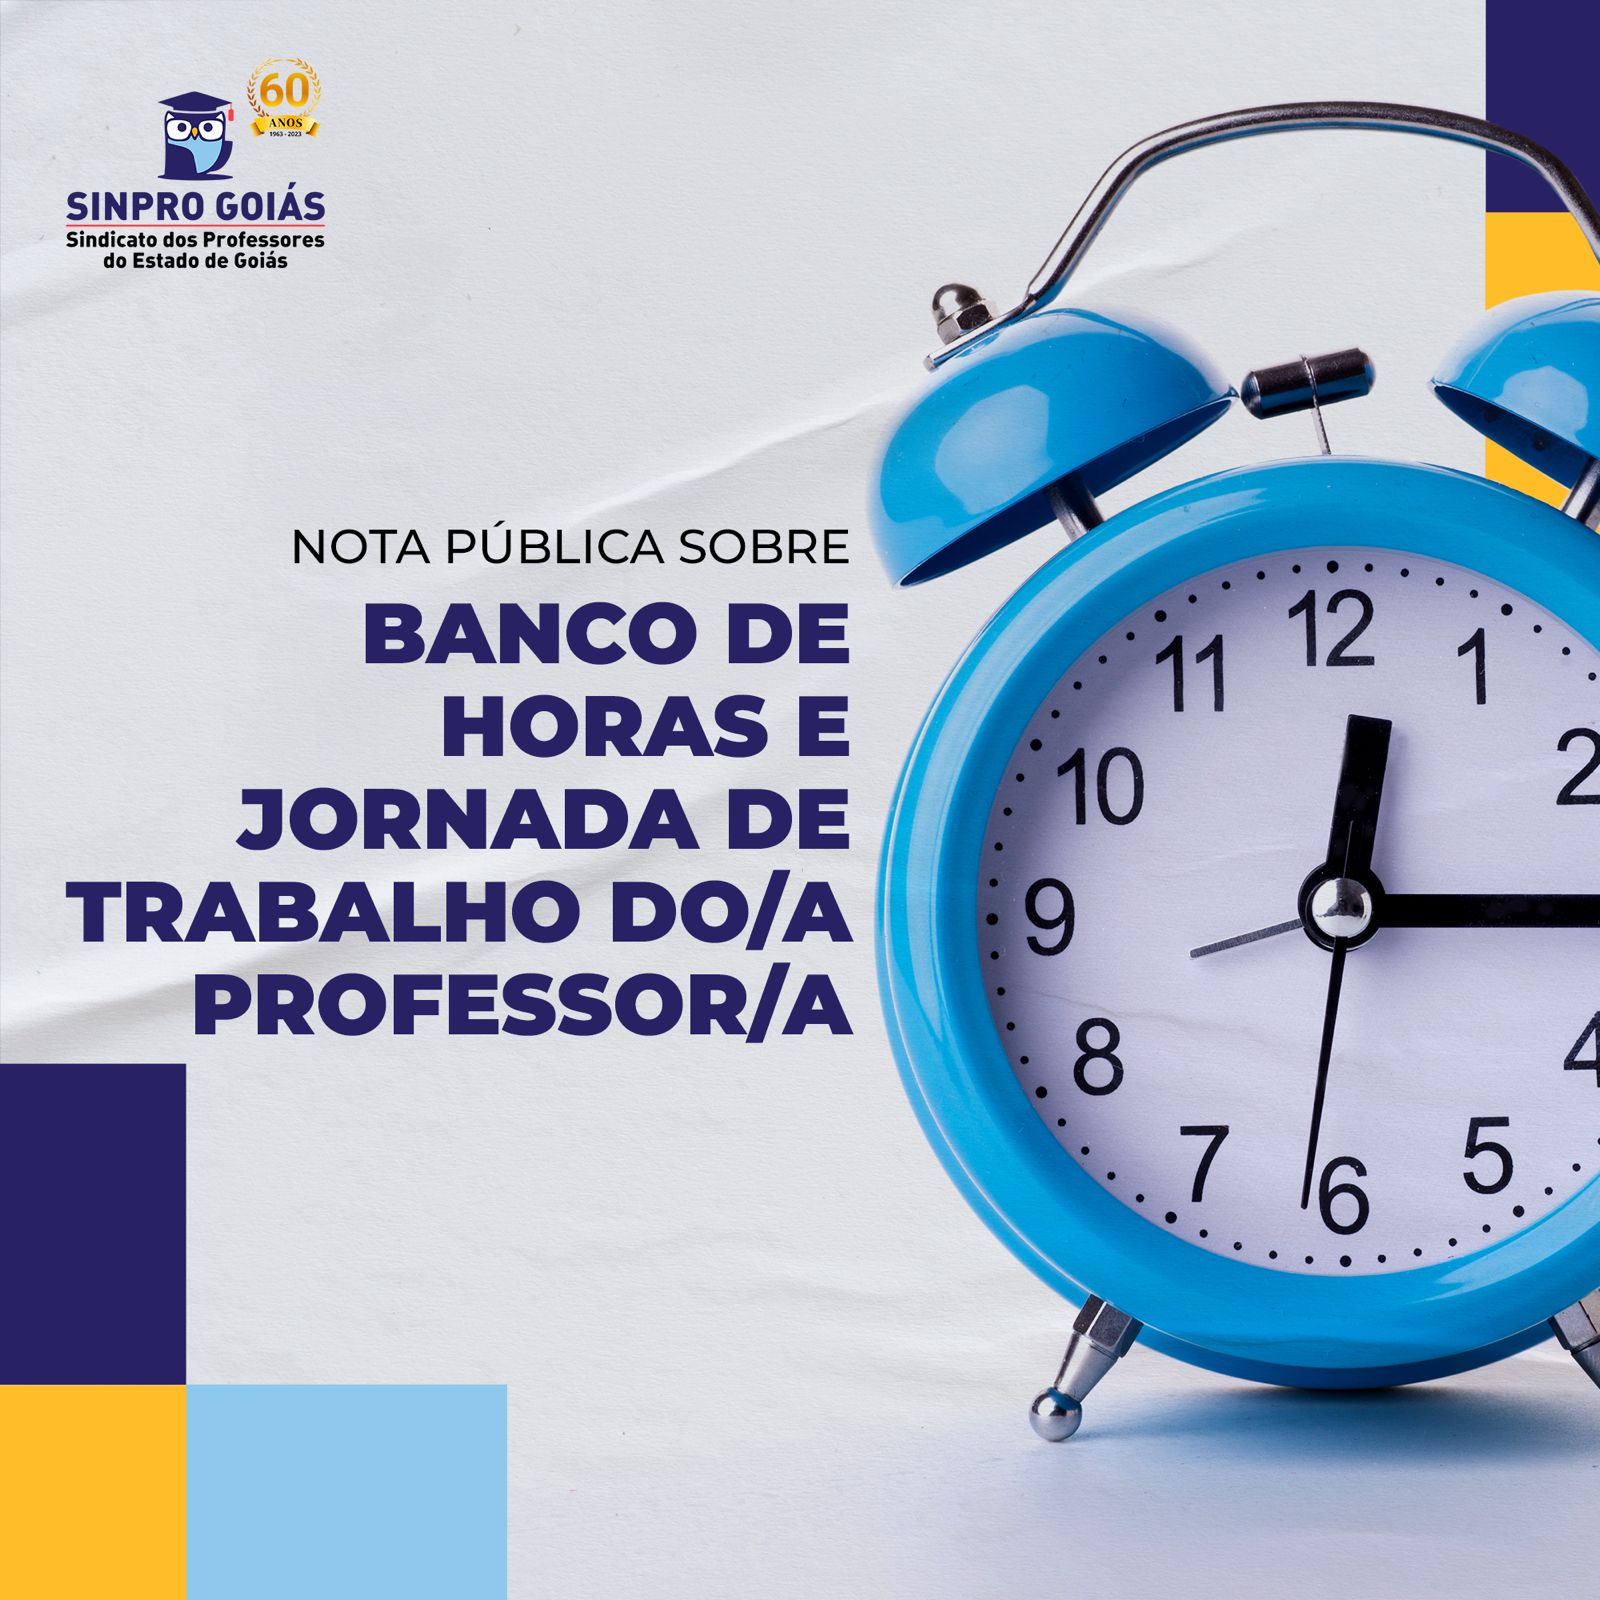 NOTA PÚBLICA SOBRE BANCO DE HORAS E JORNADA DE TRABALHO DO/A PROFESSOR/A